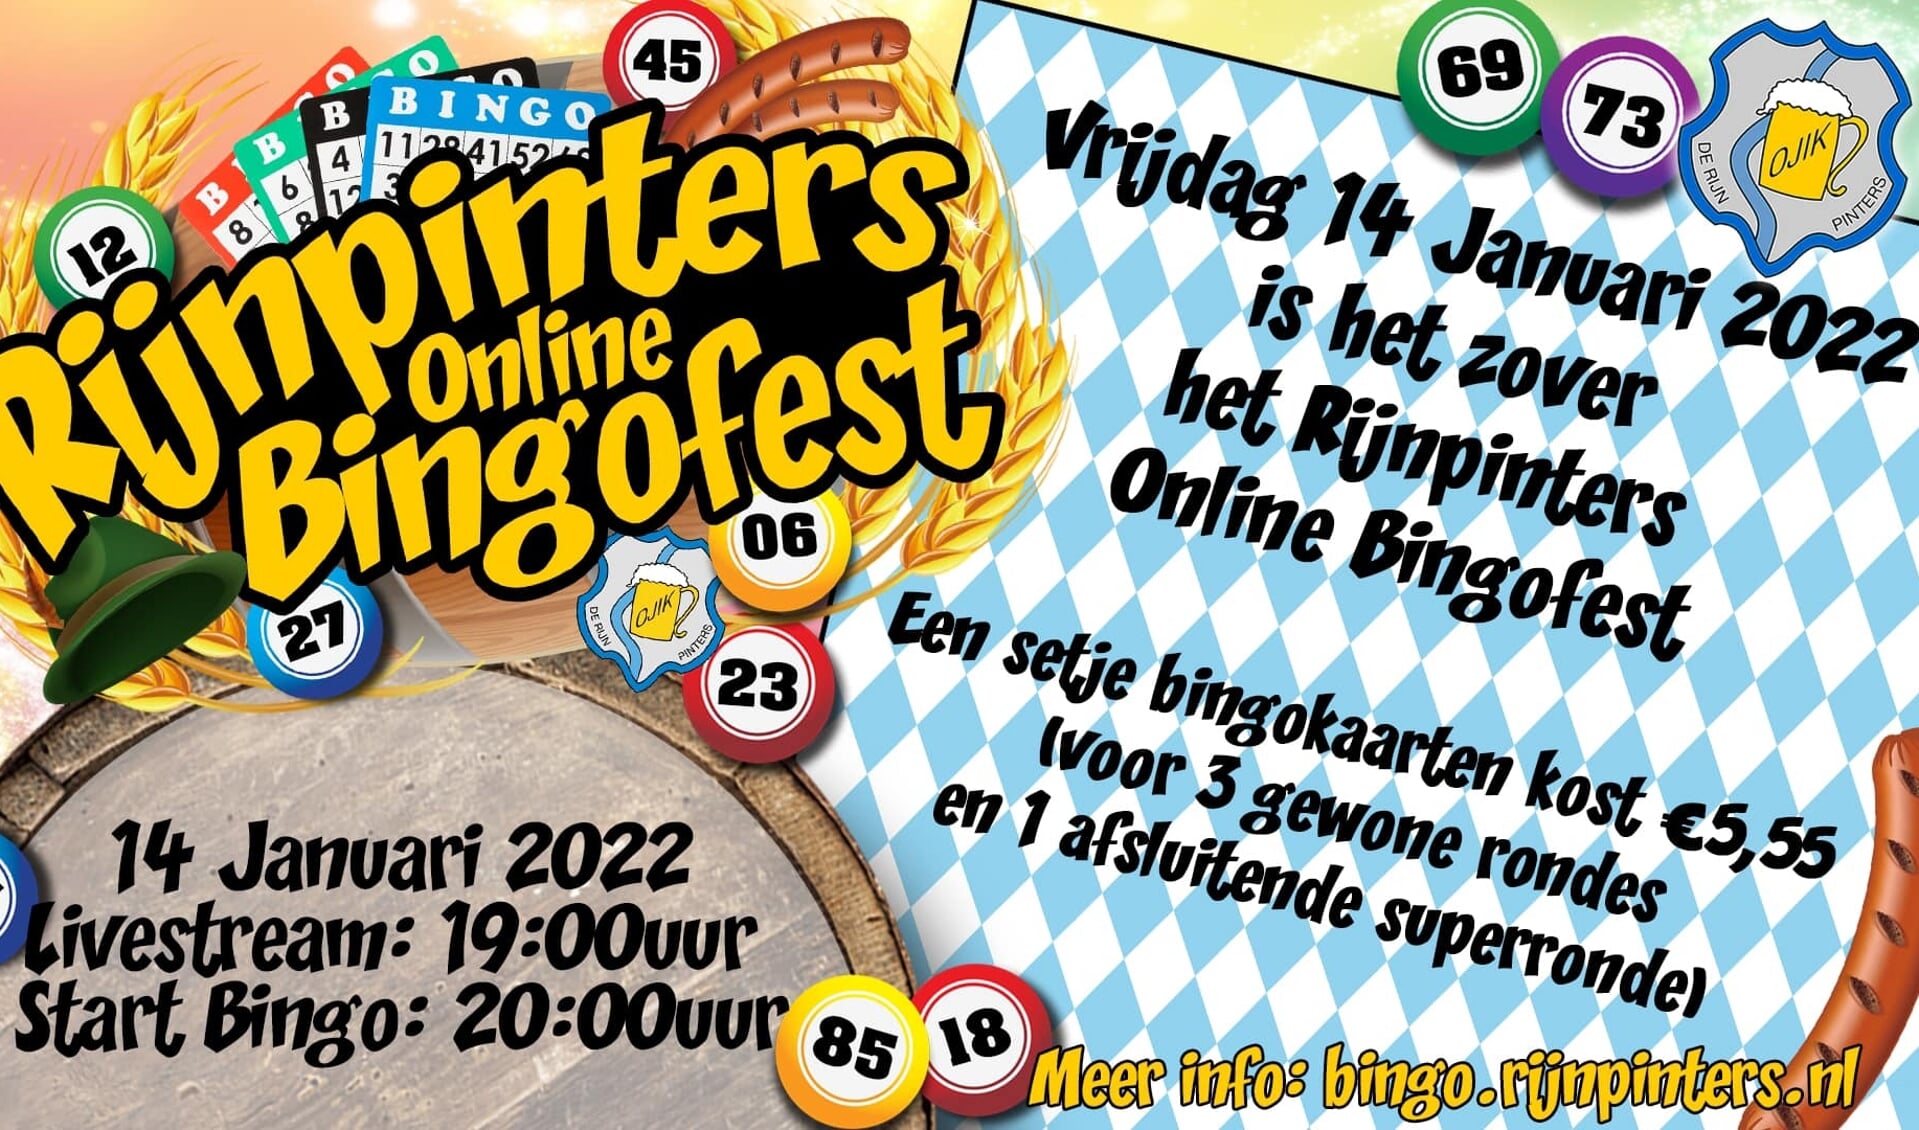 Rijnpinters Online Bingofest!